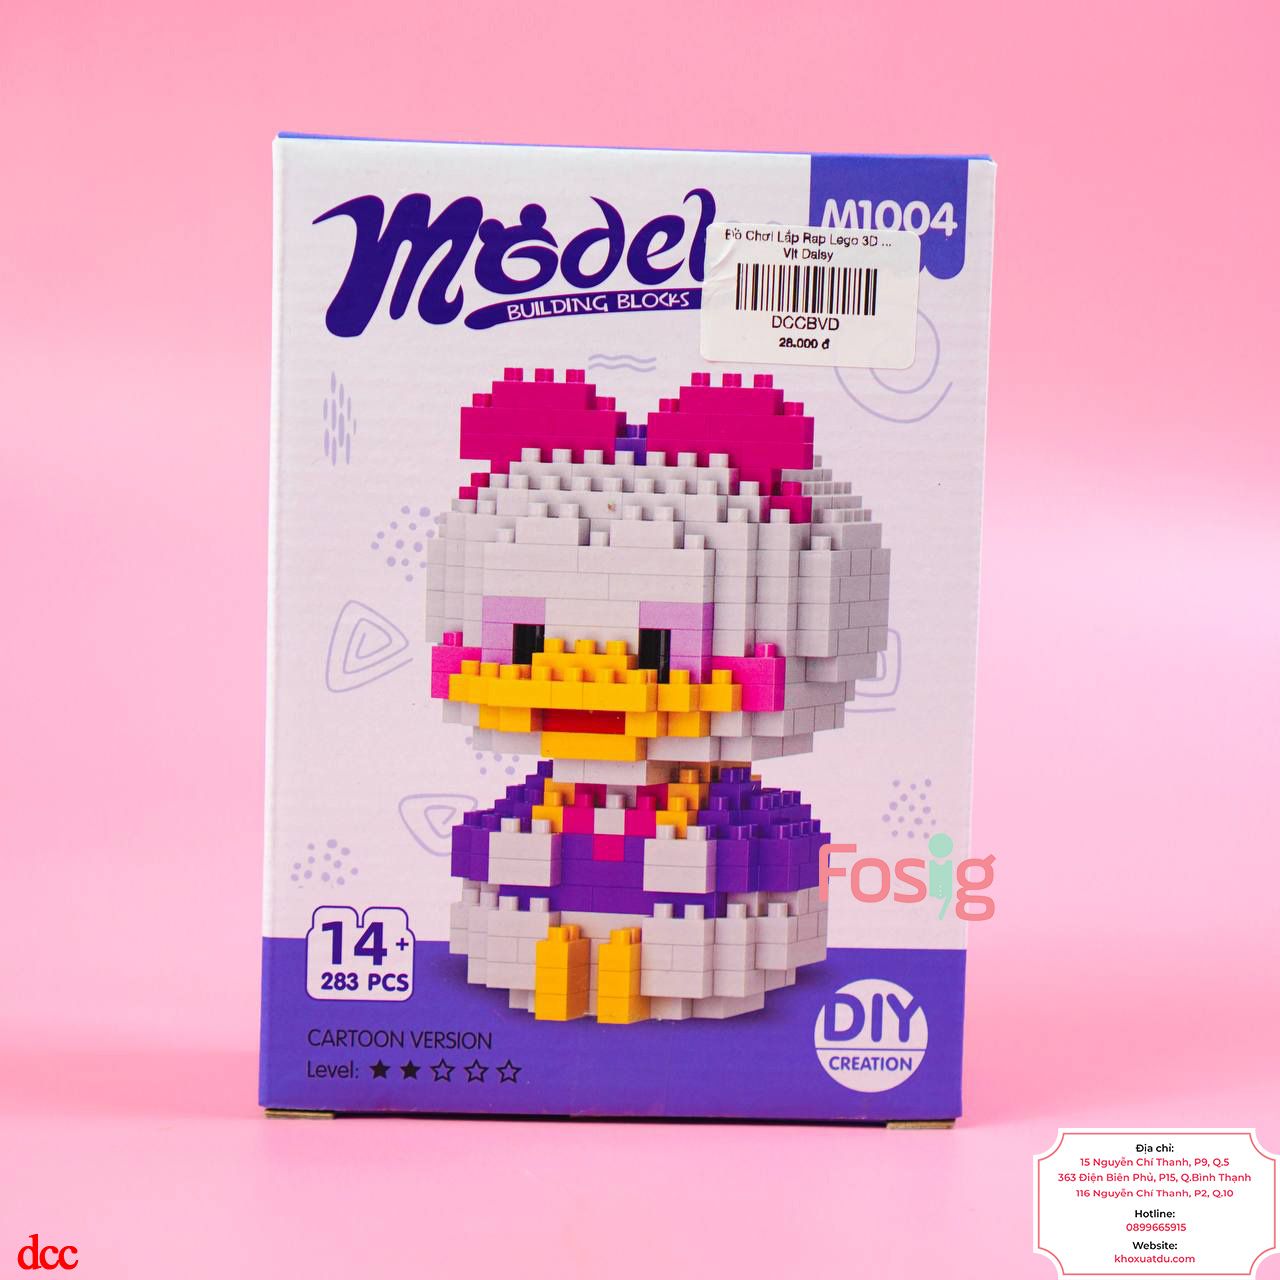  Đồ Chơi Lắp Ráp Lego 3D Cho Bé - Vịt Daisy 